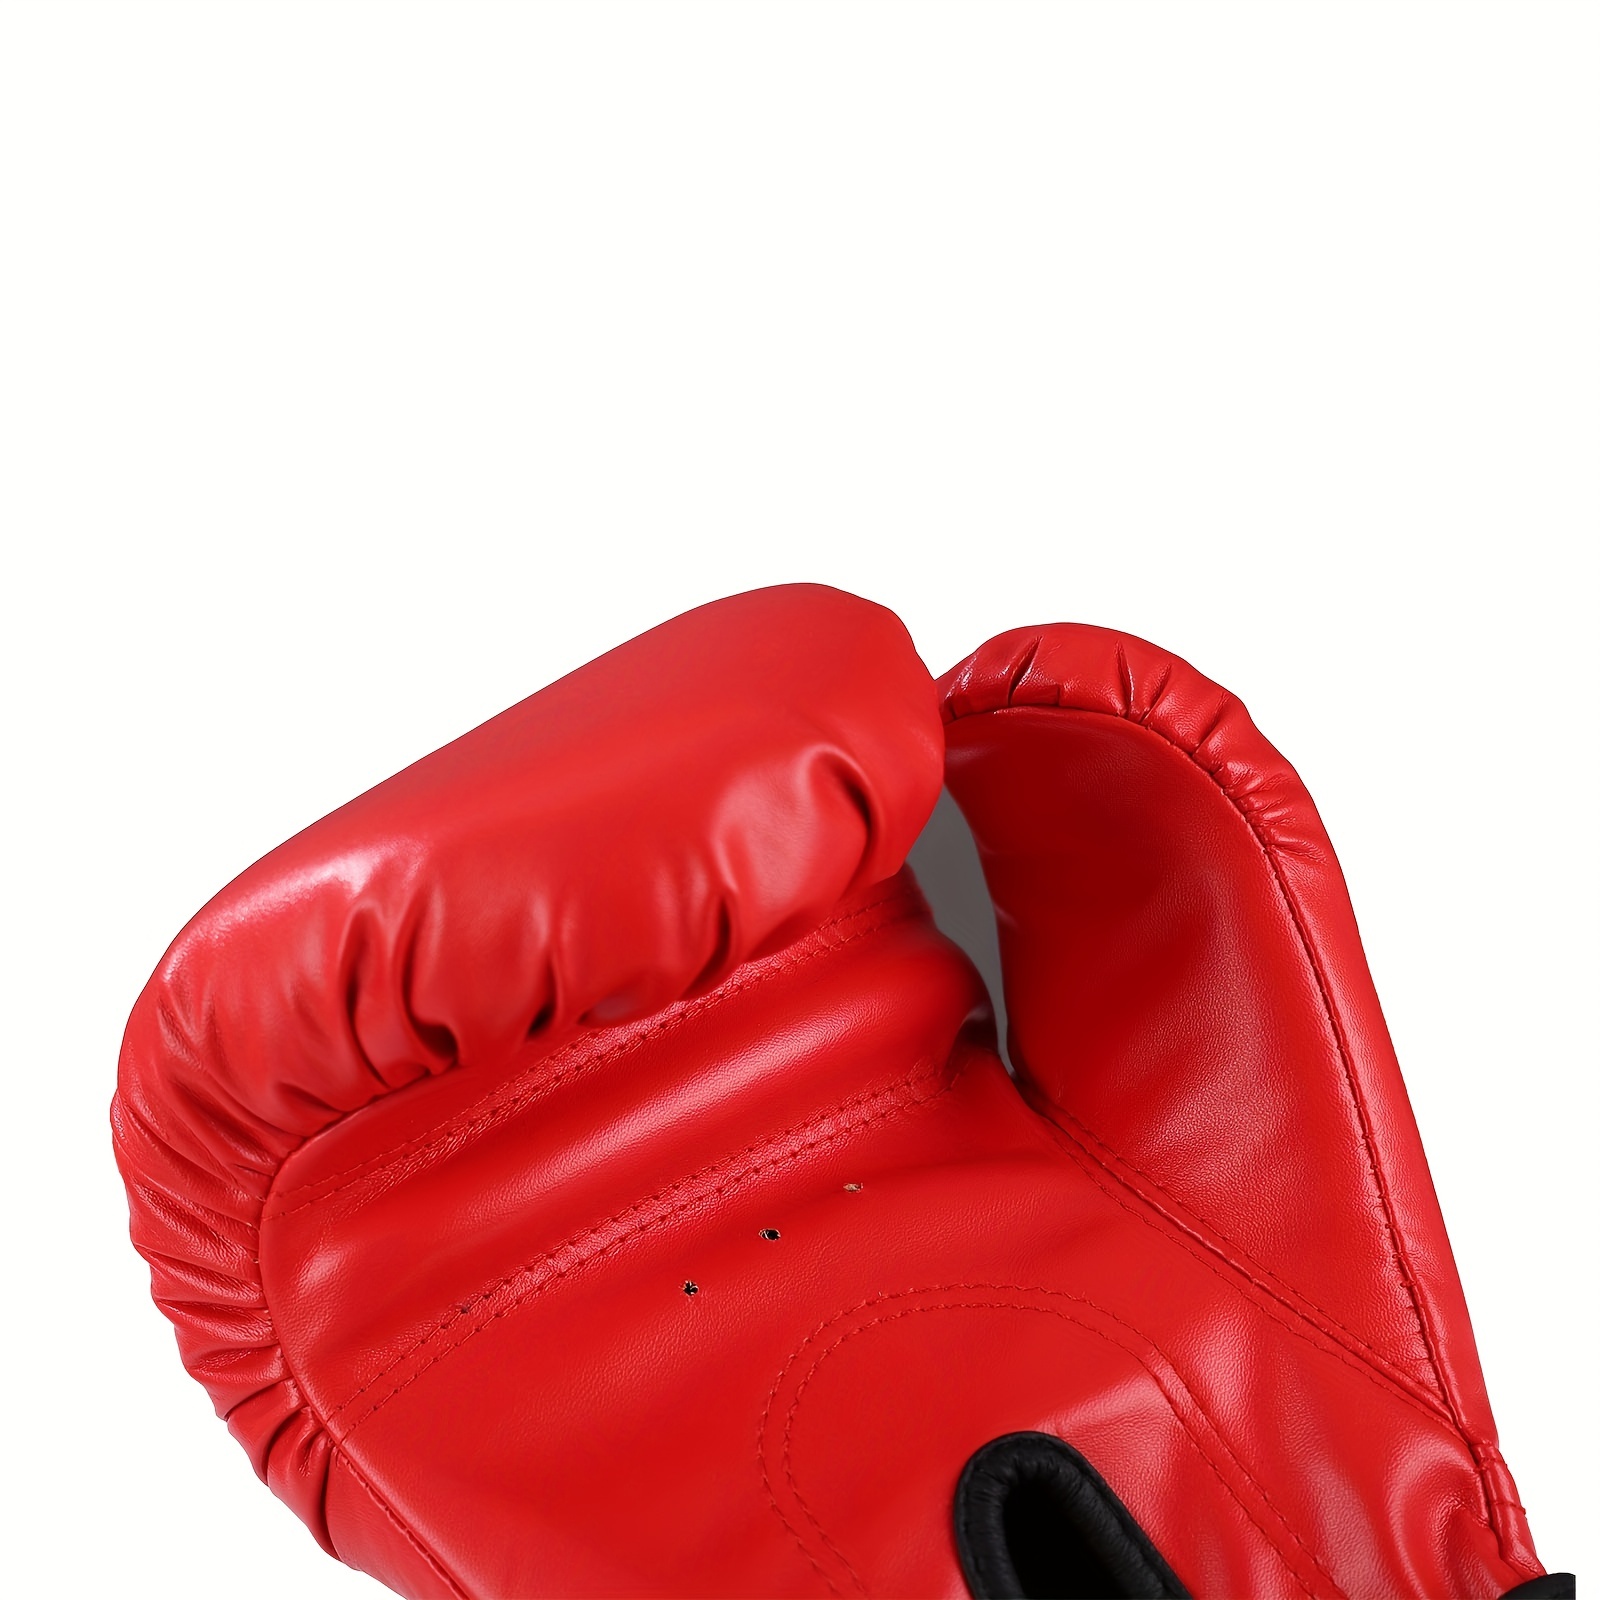 Acheter Casque de kickboxing pour adultes/enfants, entraînement MMA,  Sparring, Arts martiaux, casque de boxe